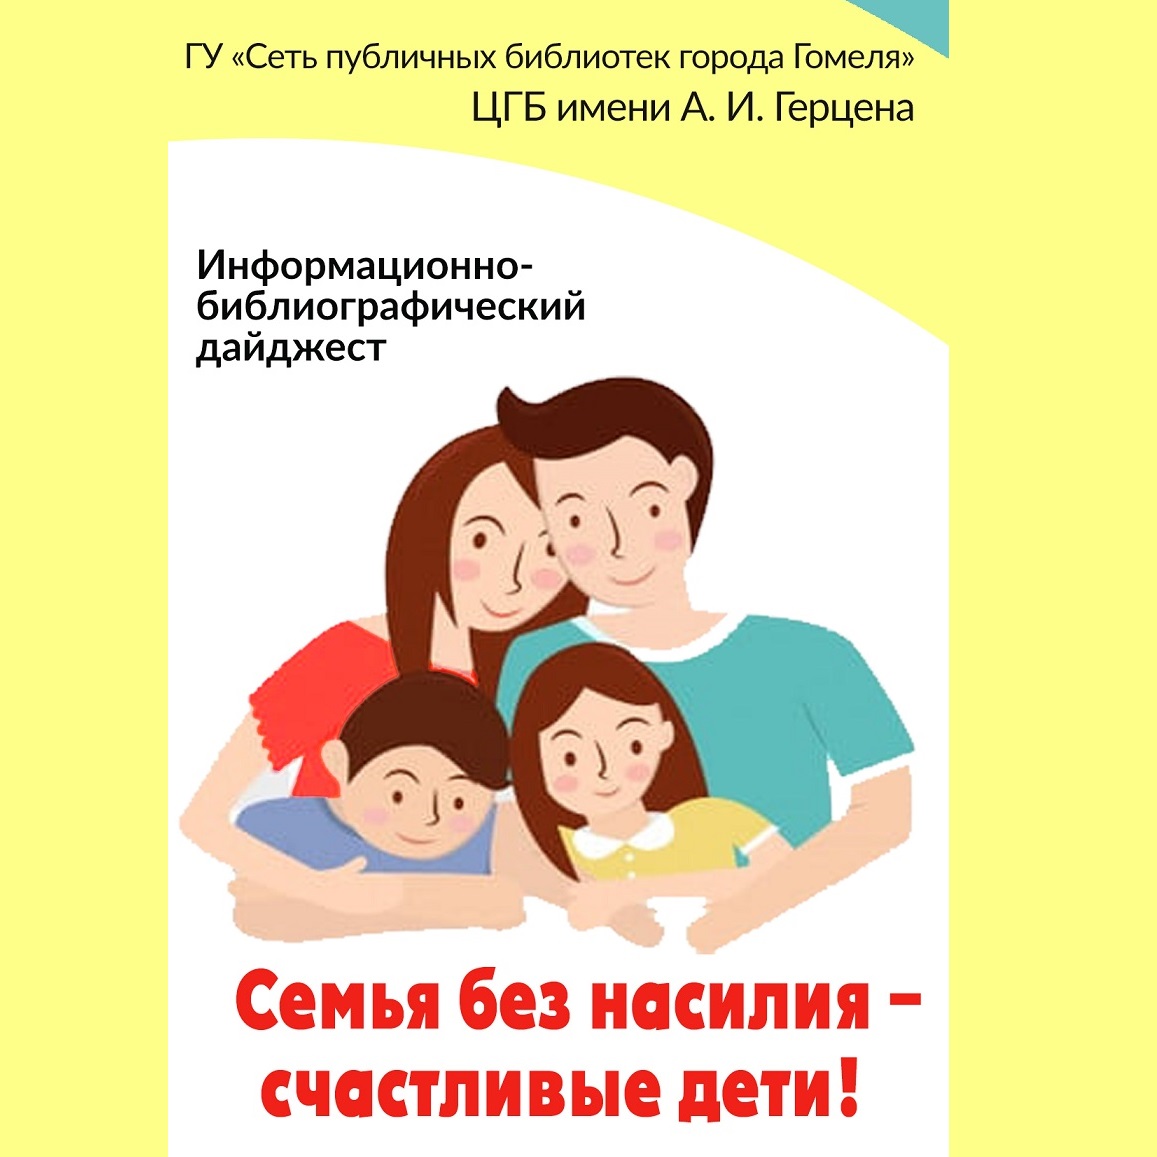 Профилактическая акция «Семья без насилия – счастливые дети!»